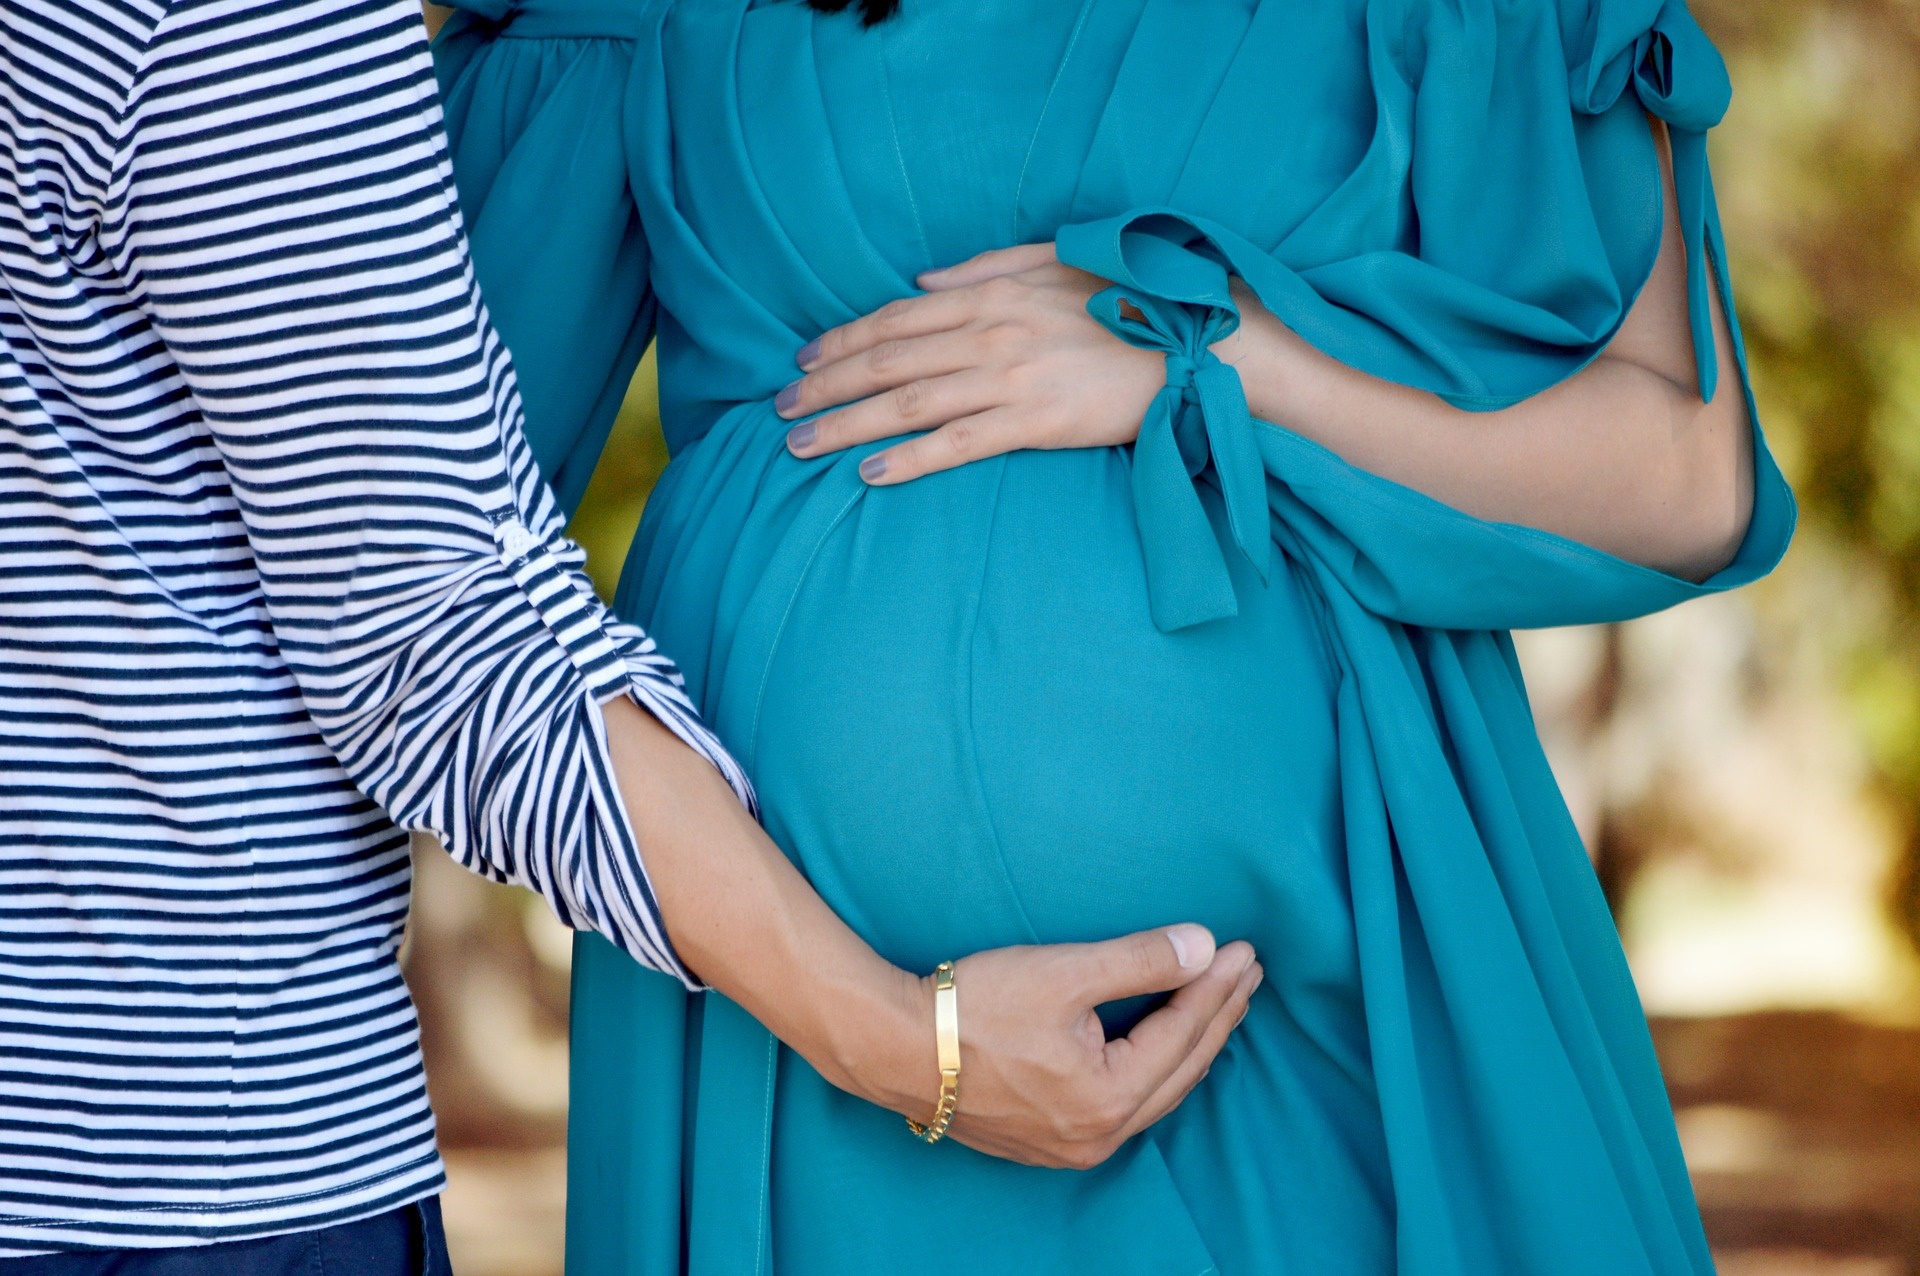 Panciera in gravidanza: quando usarla e controindicazioni